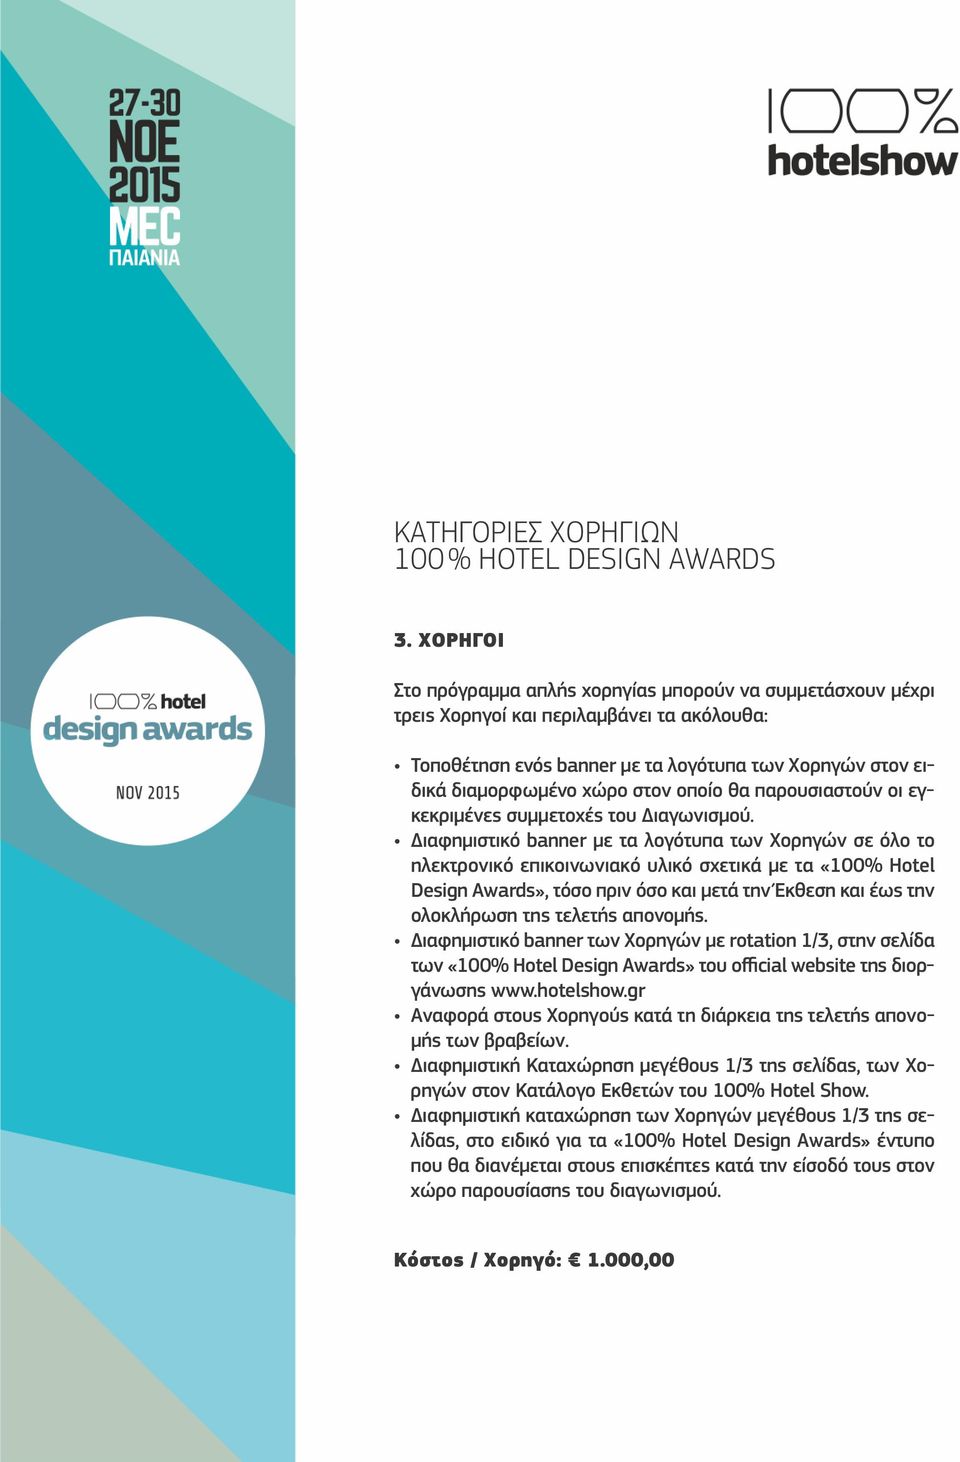 Έκθεση και έως την ολοκλήρωση της τελετής απονομής. Διαφημιστικό banner των Χορηγών με rotation 1/3, στην σελίδα των «100% Hotel Design Awards» του official website της διοργάνωσης www.hotelshow.